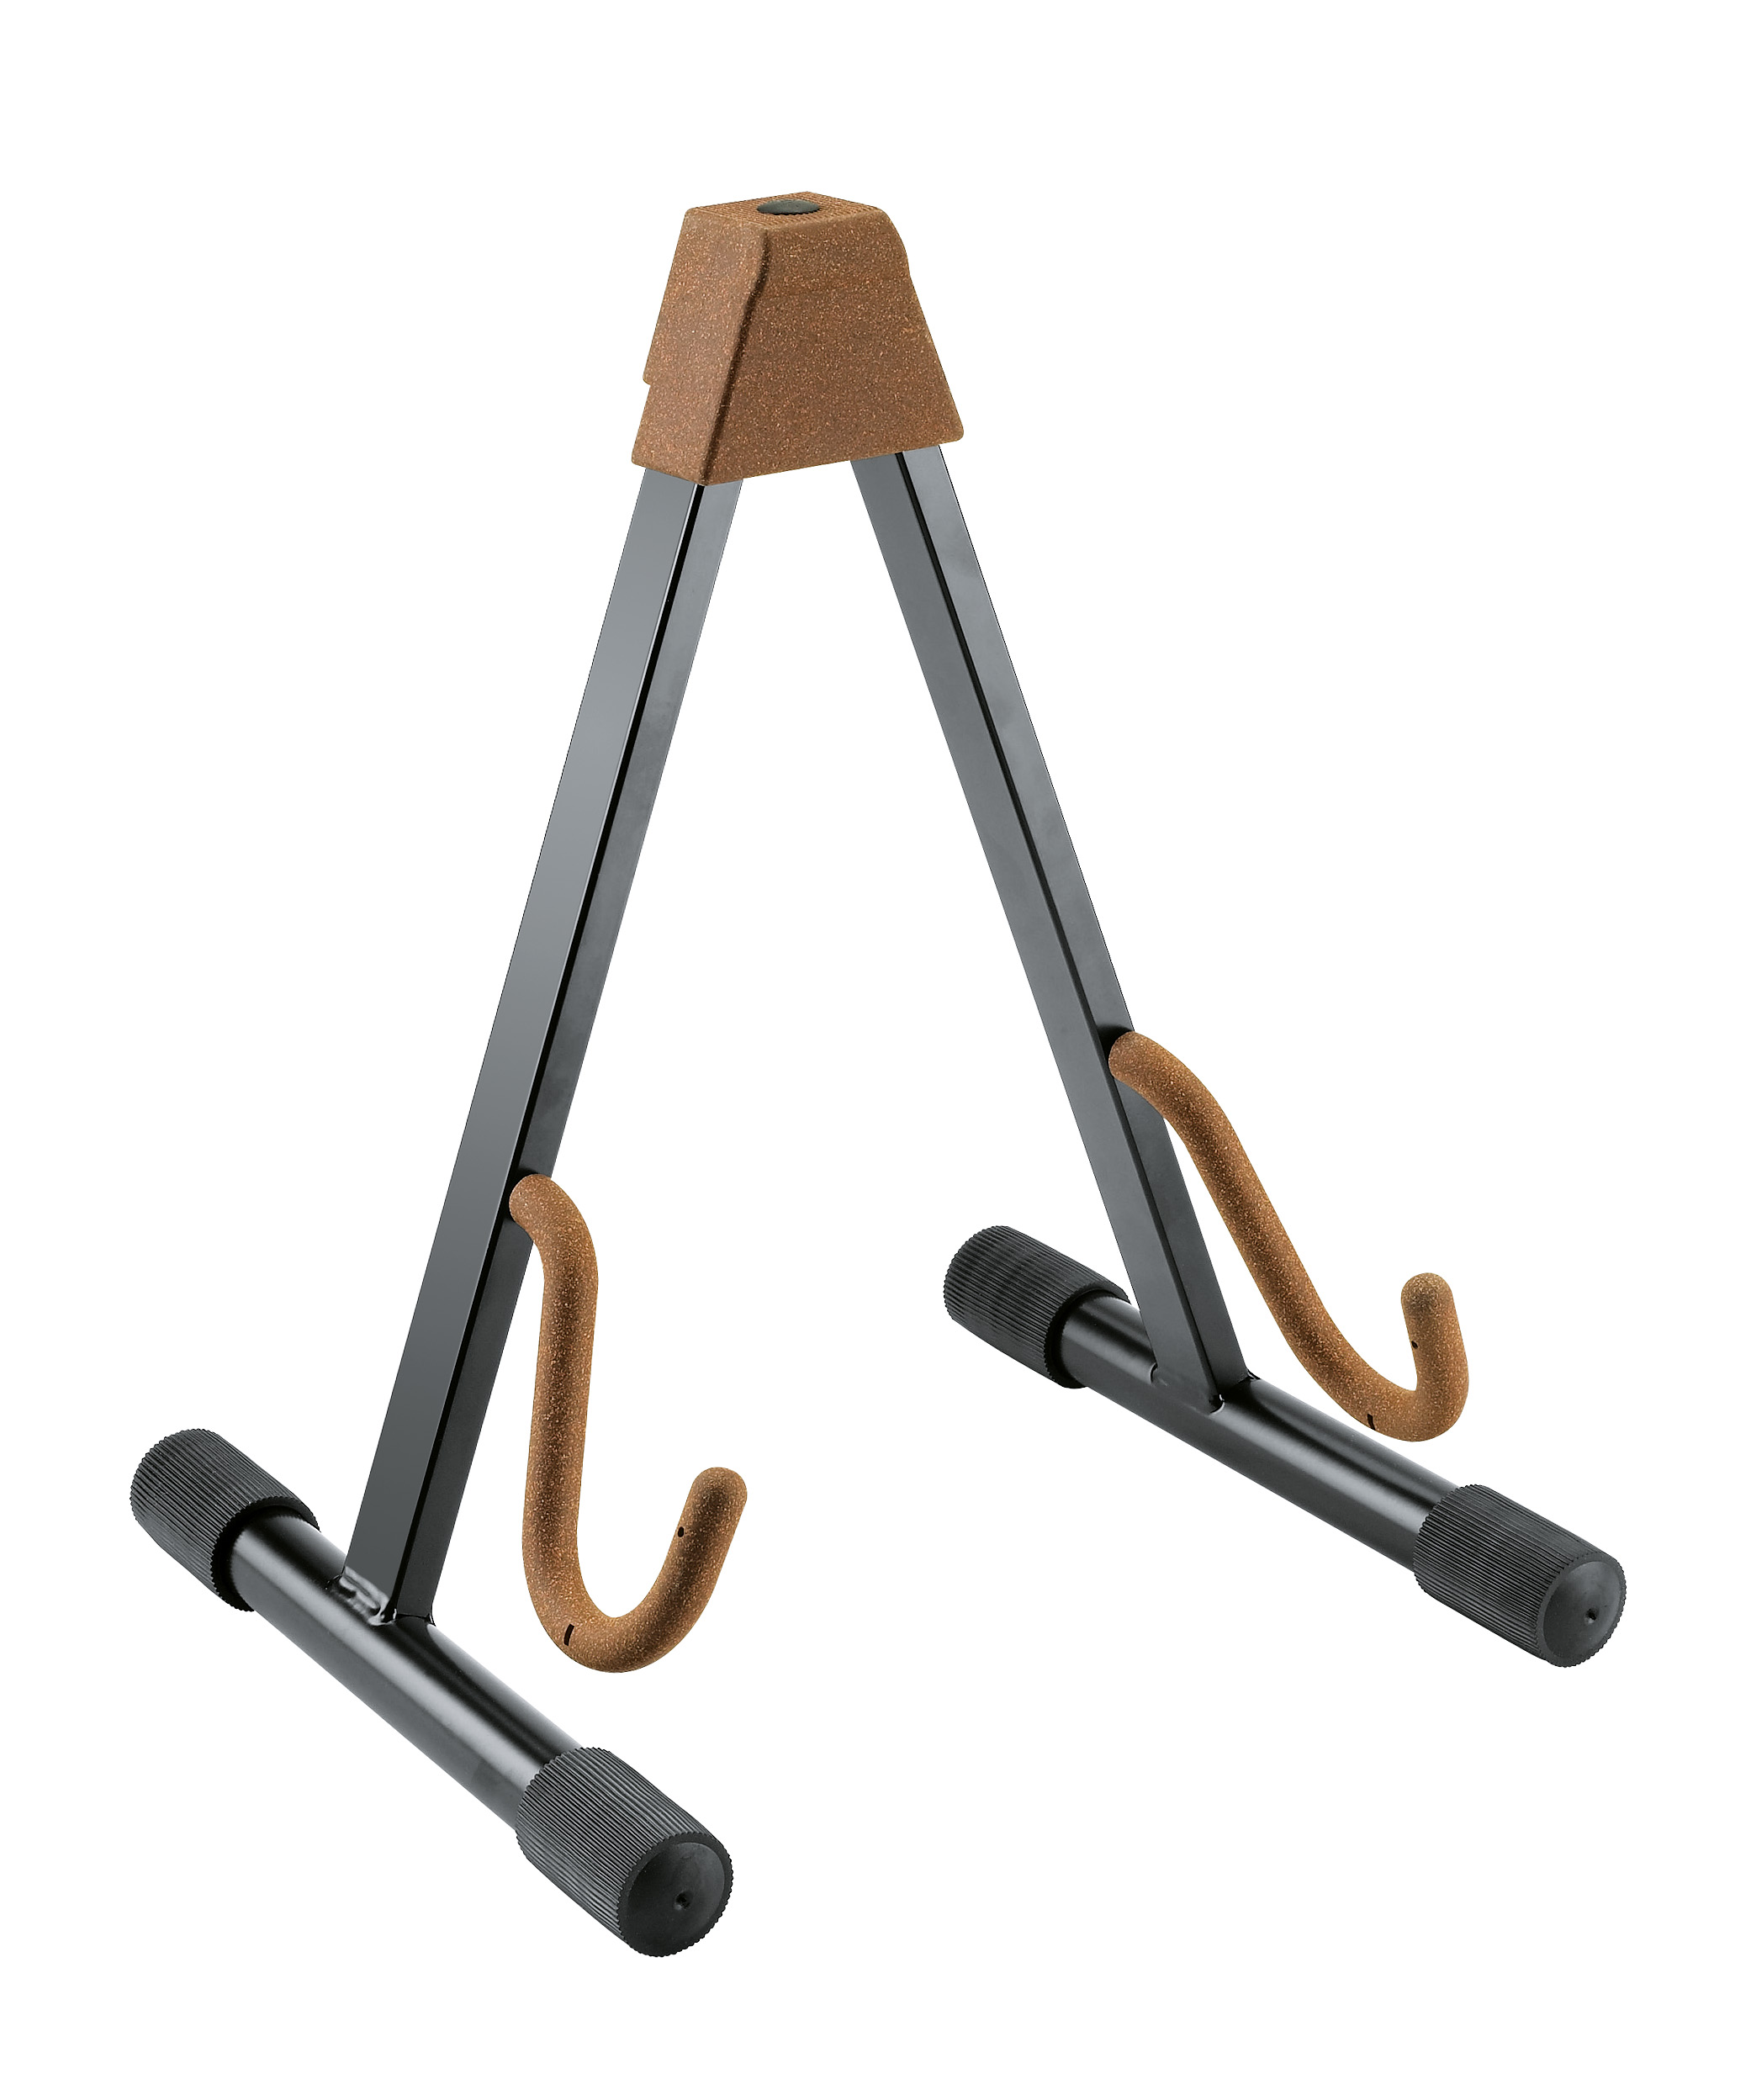 König & Meyer 14130 Cello Stand steel, black, cork